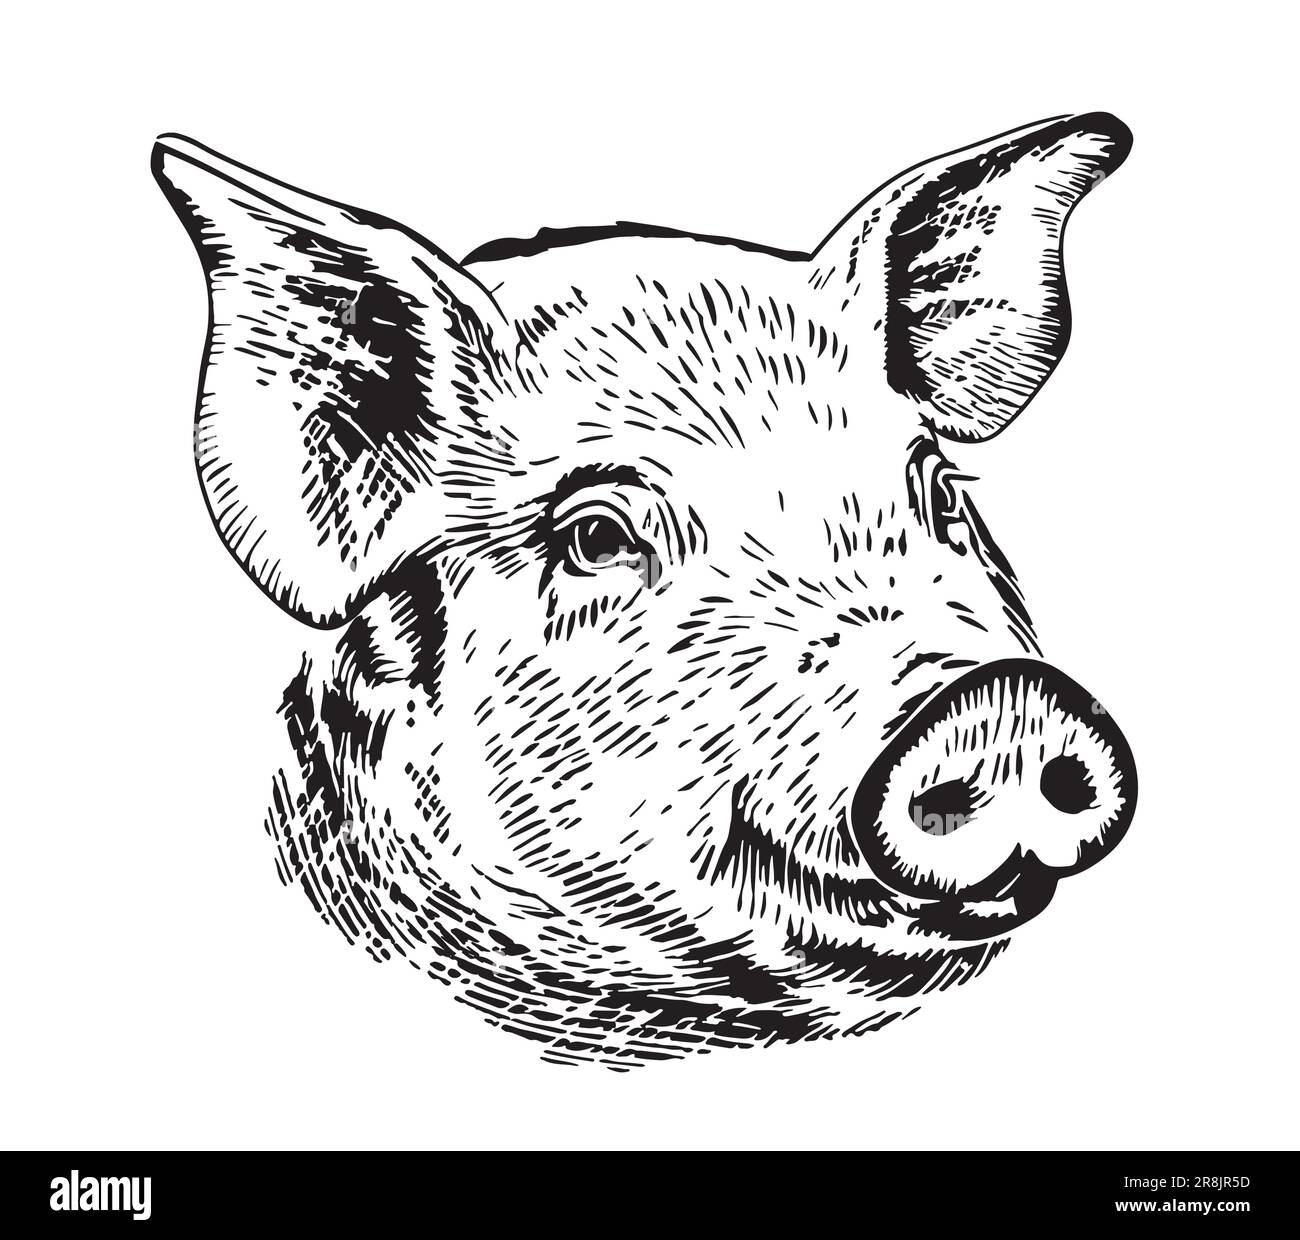 Dessin de cochon mignon dessiné à la main dans le style Doodle Farm Animals Vector illustration Illustration de Vecteur